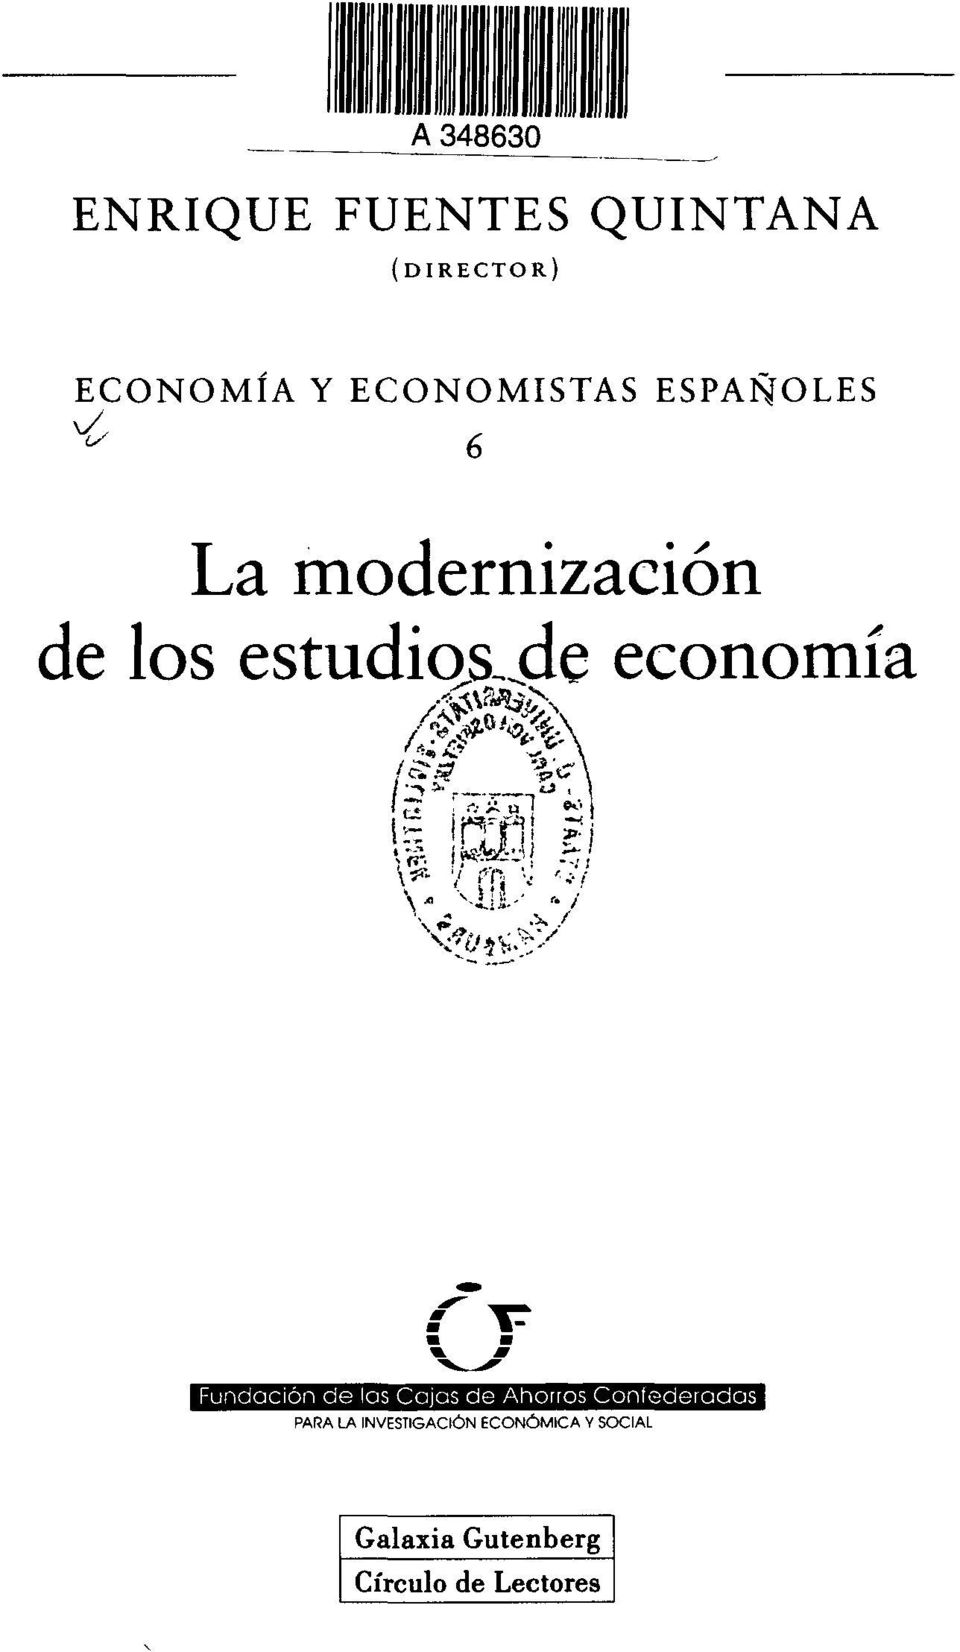 modernización de los estudios-jde economía PARA LA